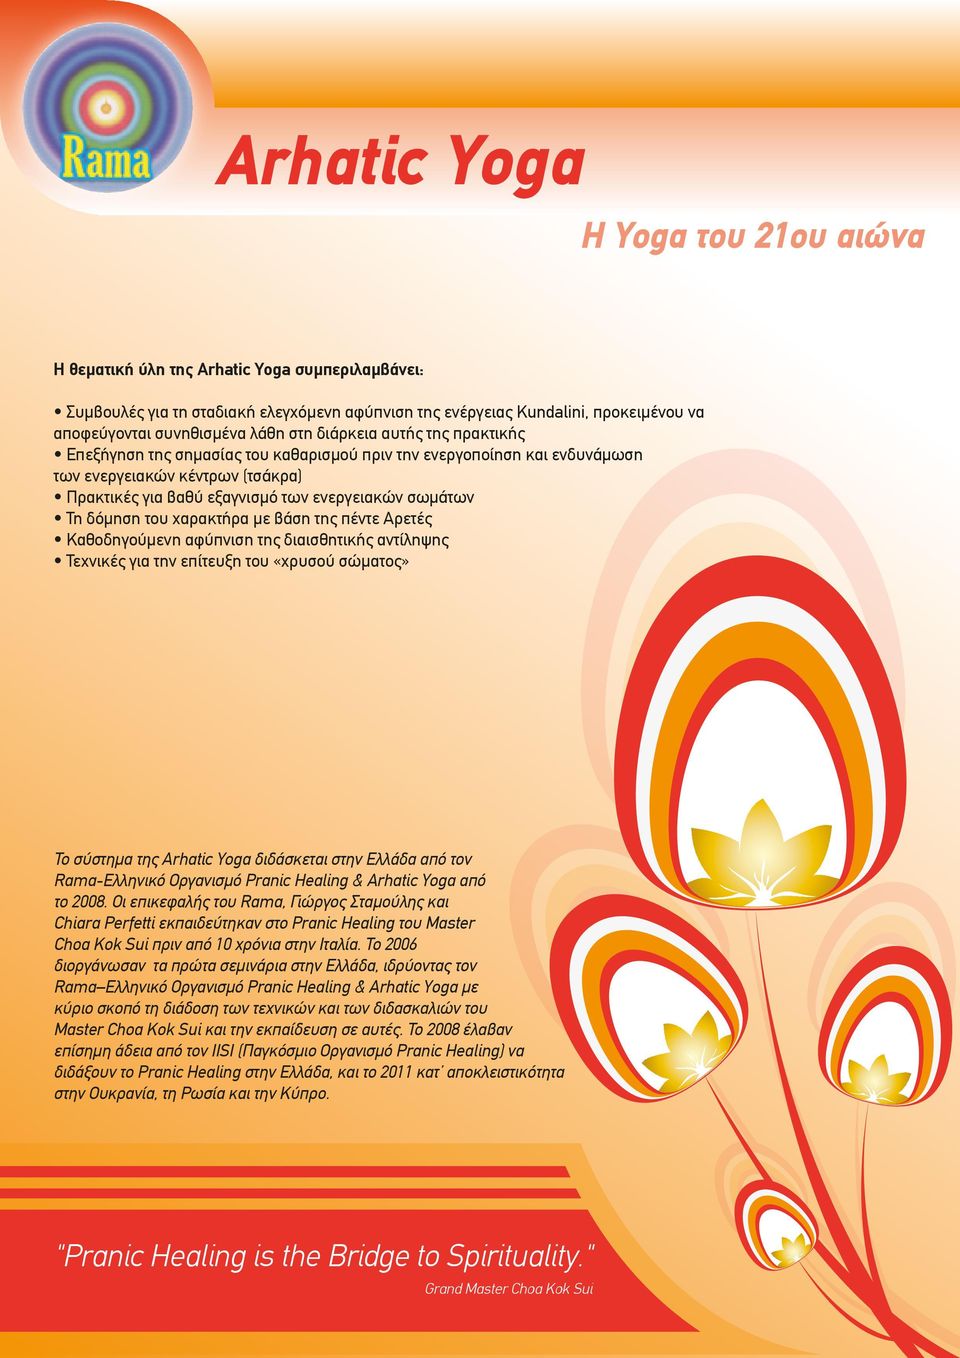 δόµηση του χαρακτήρα µε βάση της πέντε Αρετές Καθοδηγούµενη αφύπνιση της διαισθητικής αντίληψης Τεχνικές για την επίτευξη του «χρυσού σώµατος» Το σύστηµα της Arhatic Yoga διδάσκεται στην Ελλάδα από